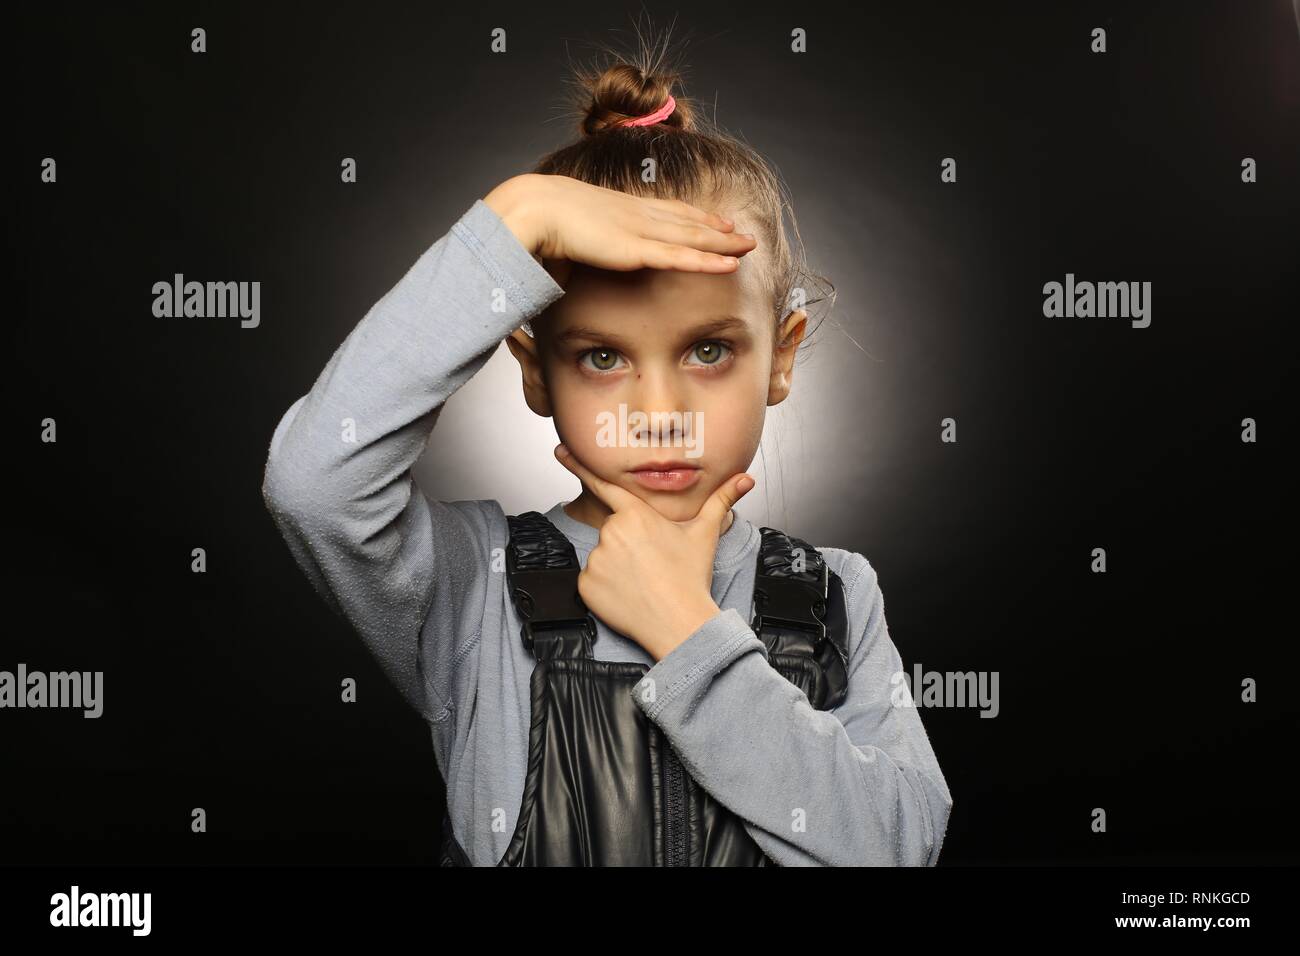 Ukrainian girl, 5-9 años, en monos, mantiene las manos en un serio, hermoso rostro con una mirada recta a la cámara Foto de stock